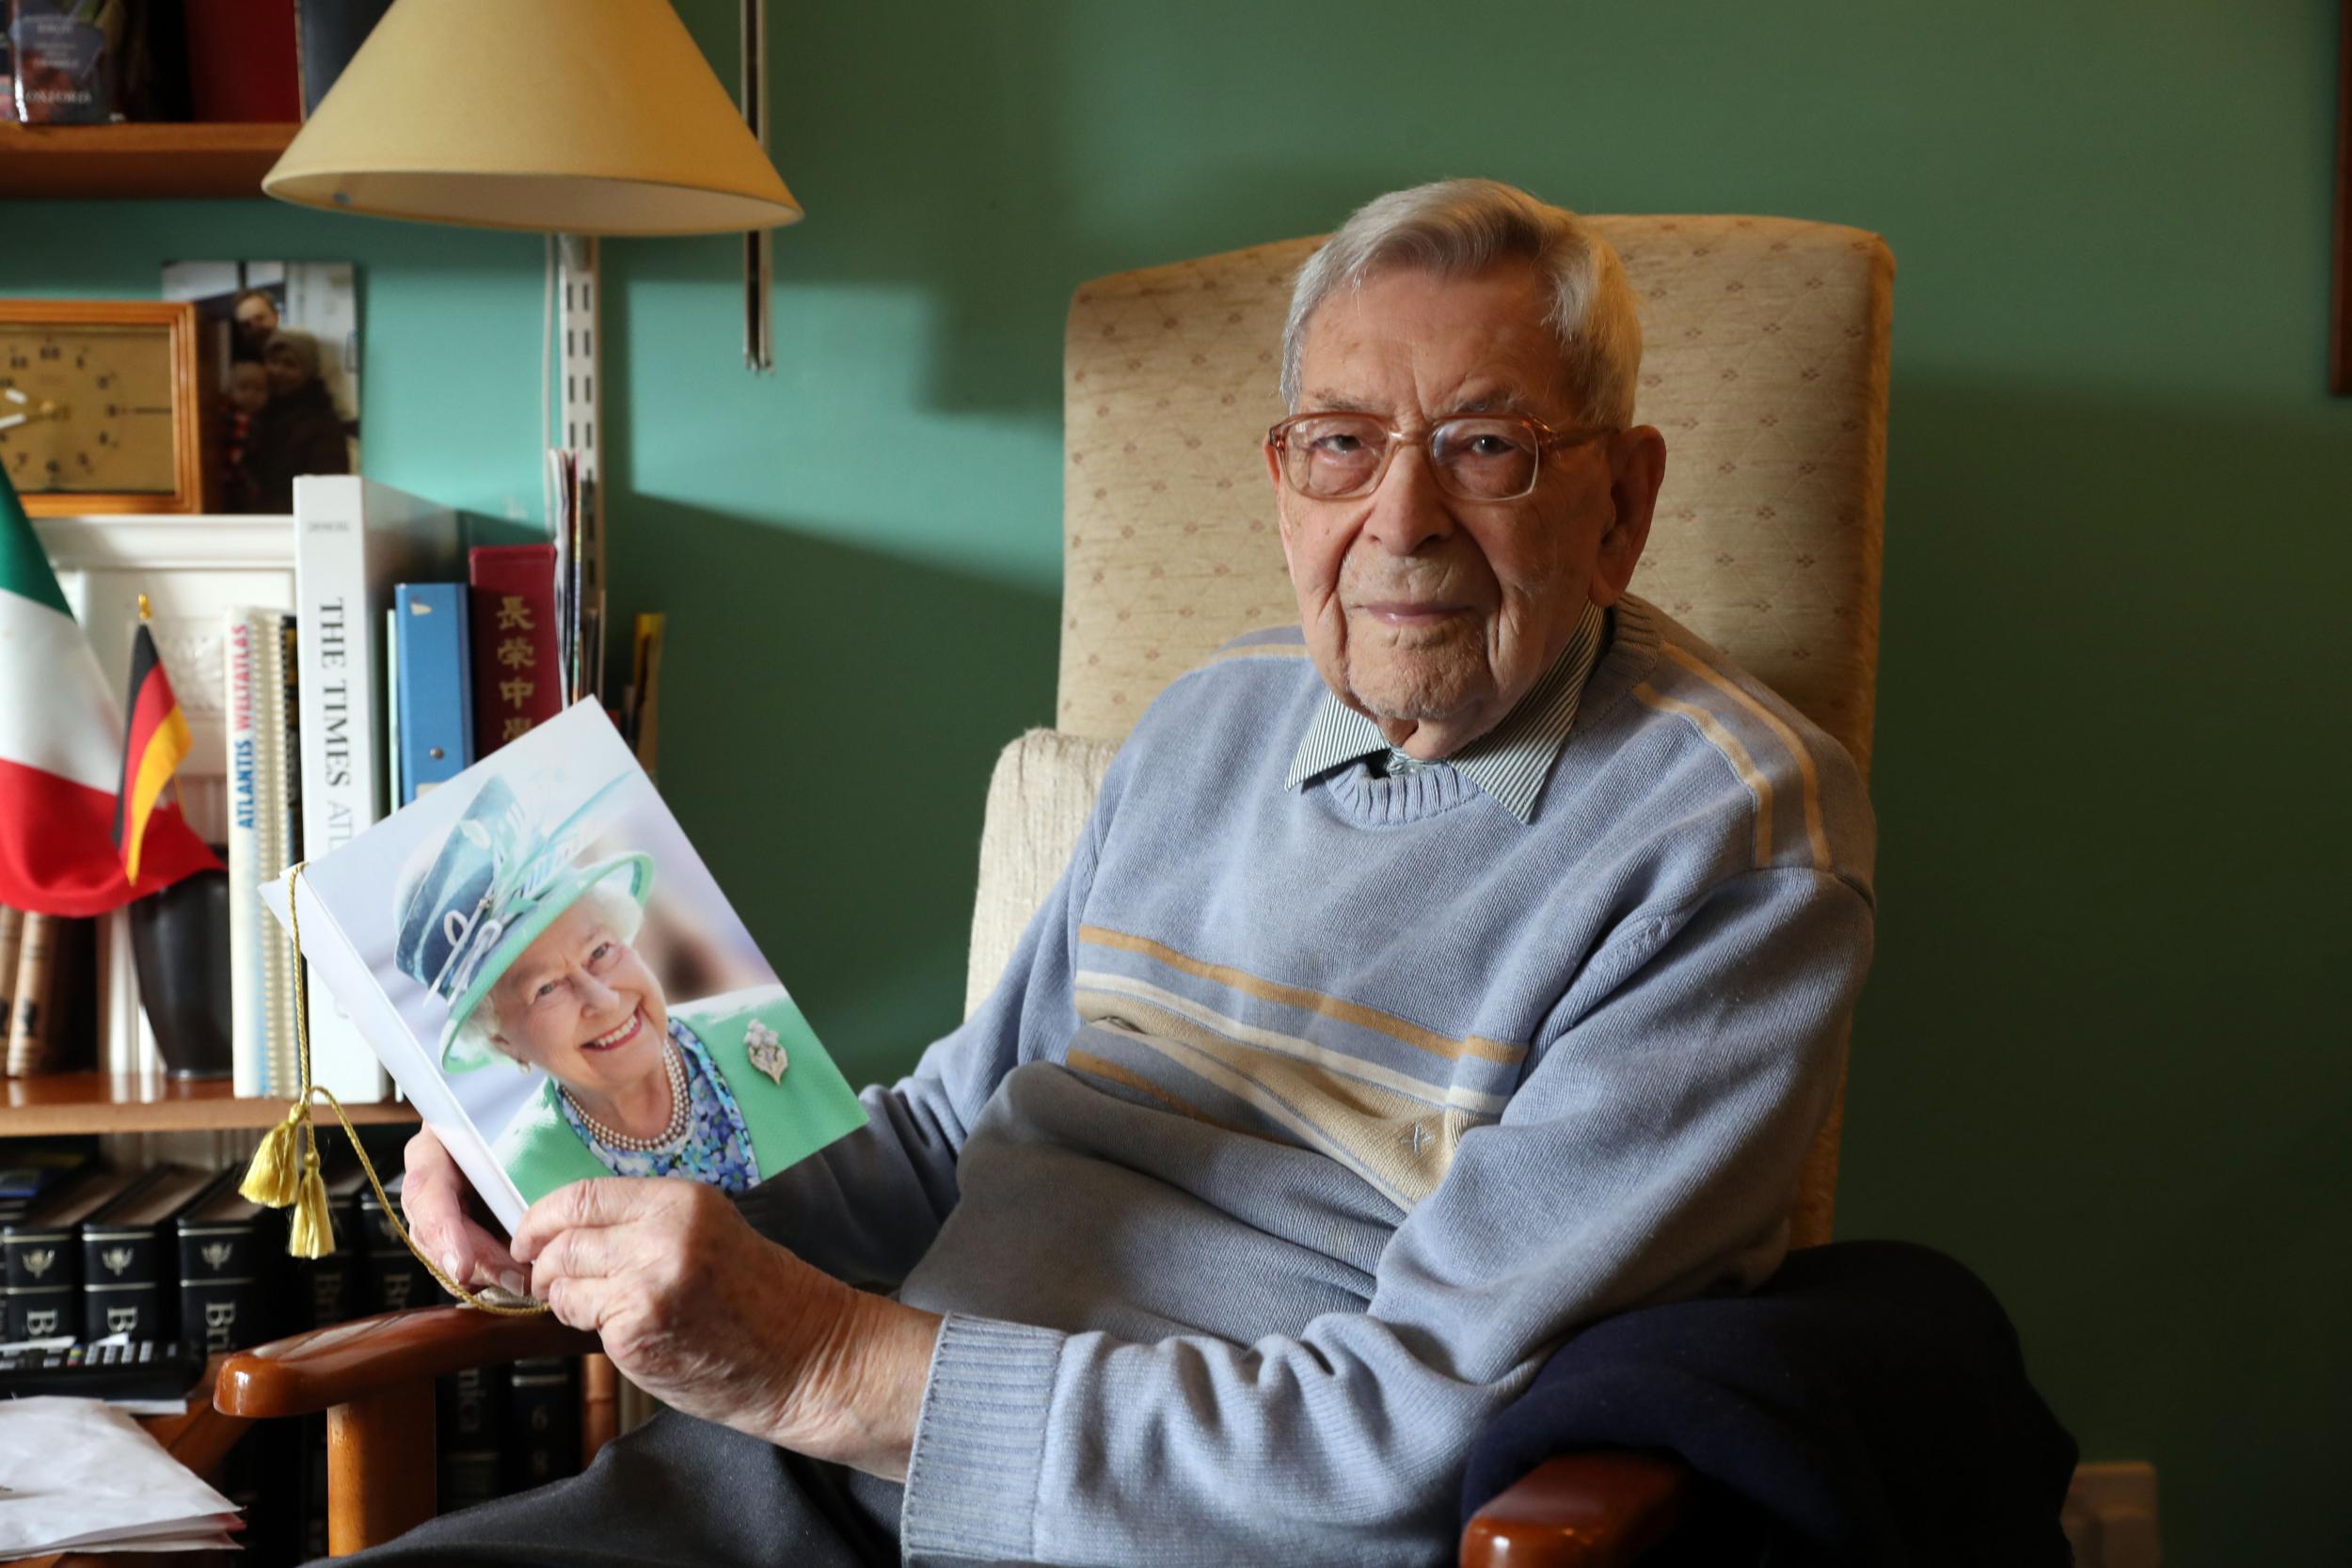 O γηραιότερος άνδρας στον κόσμο: Πέθανε ο γλυκύτατος Μπομπ Γουέιτον